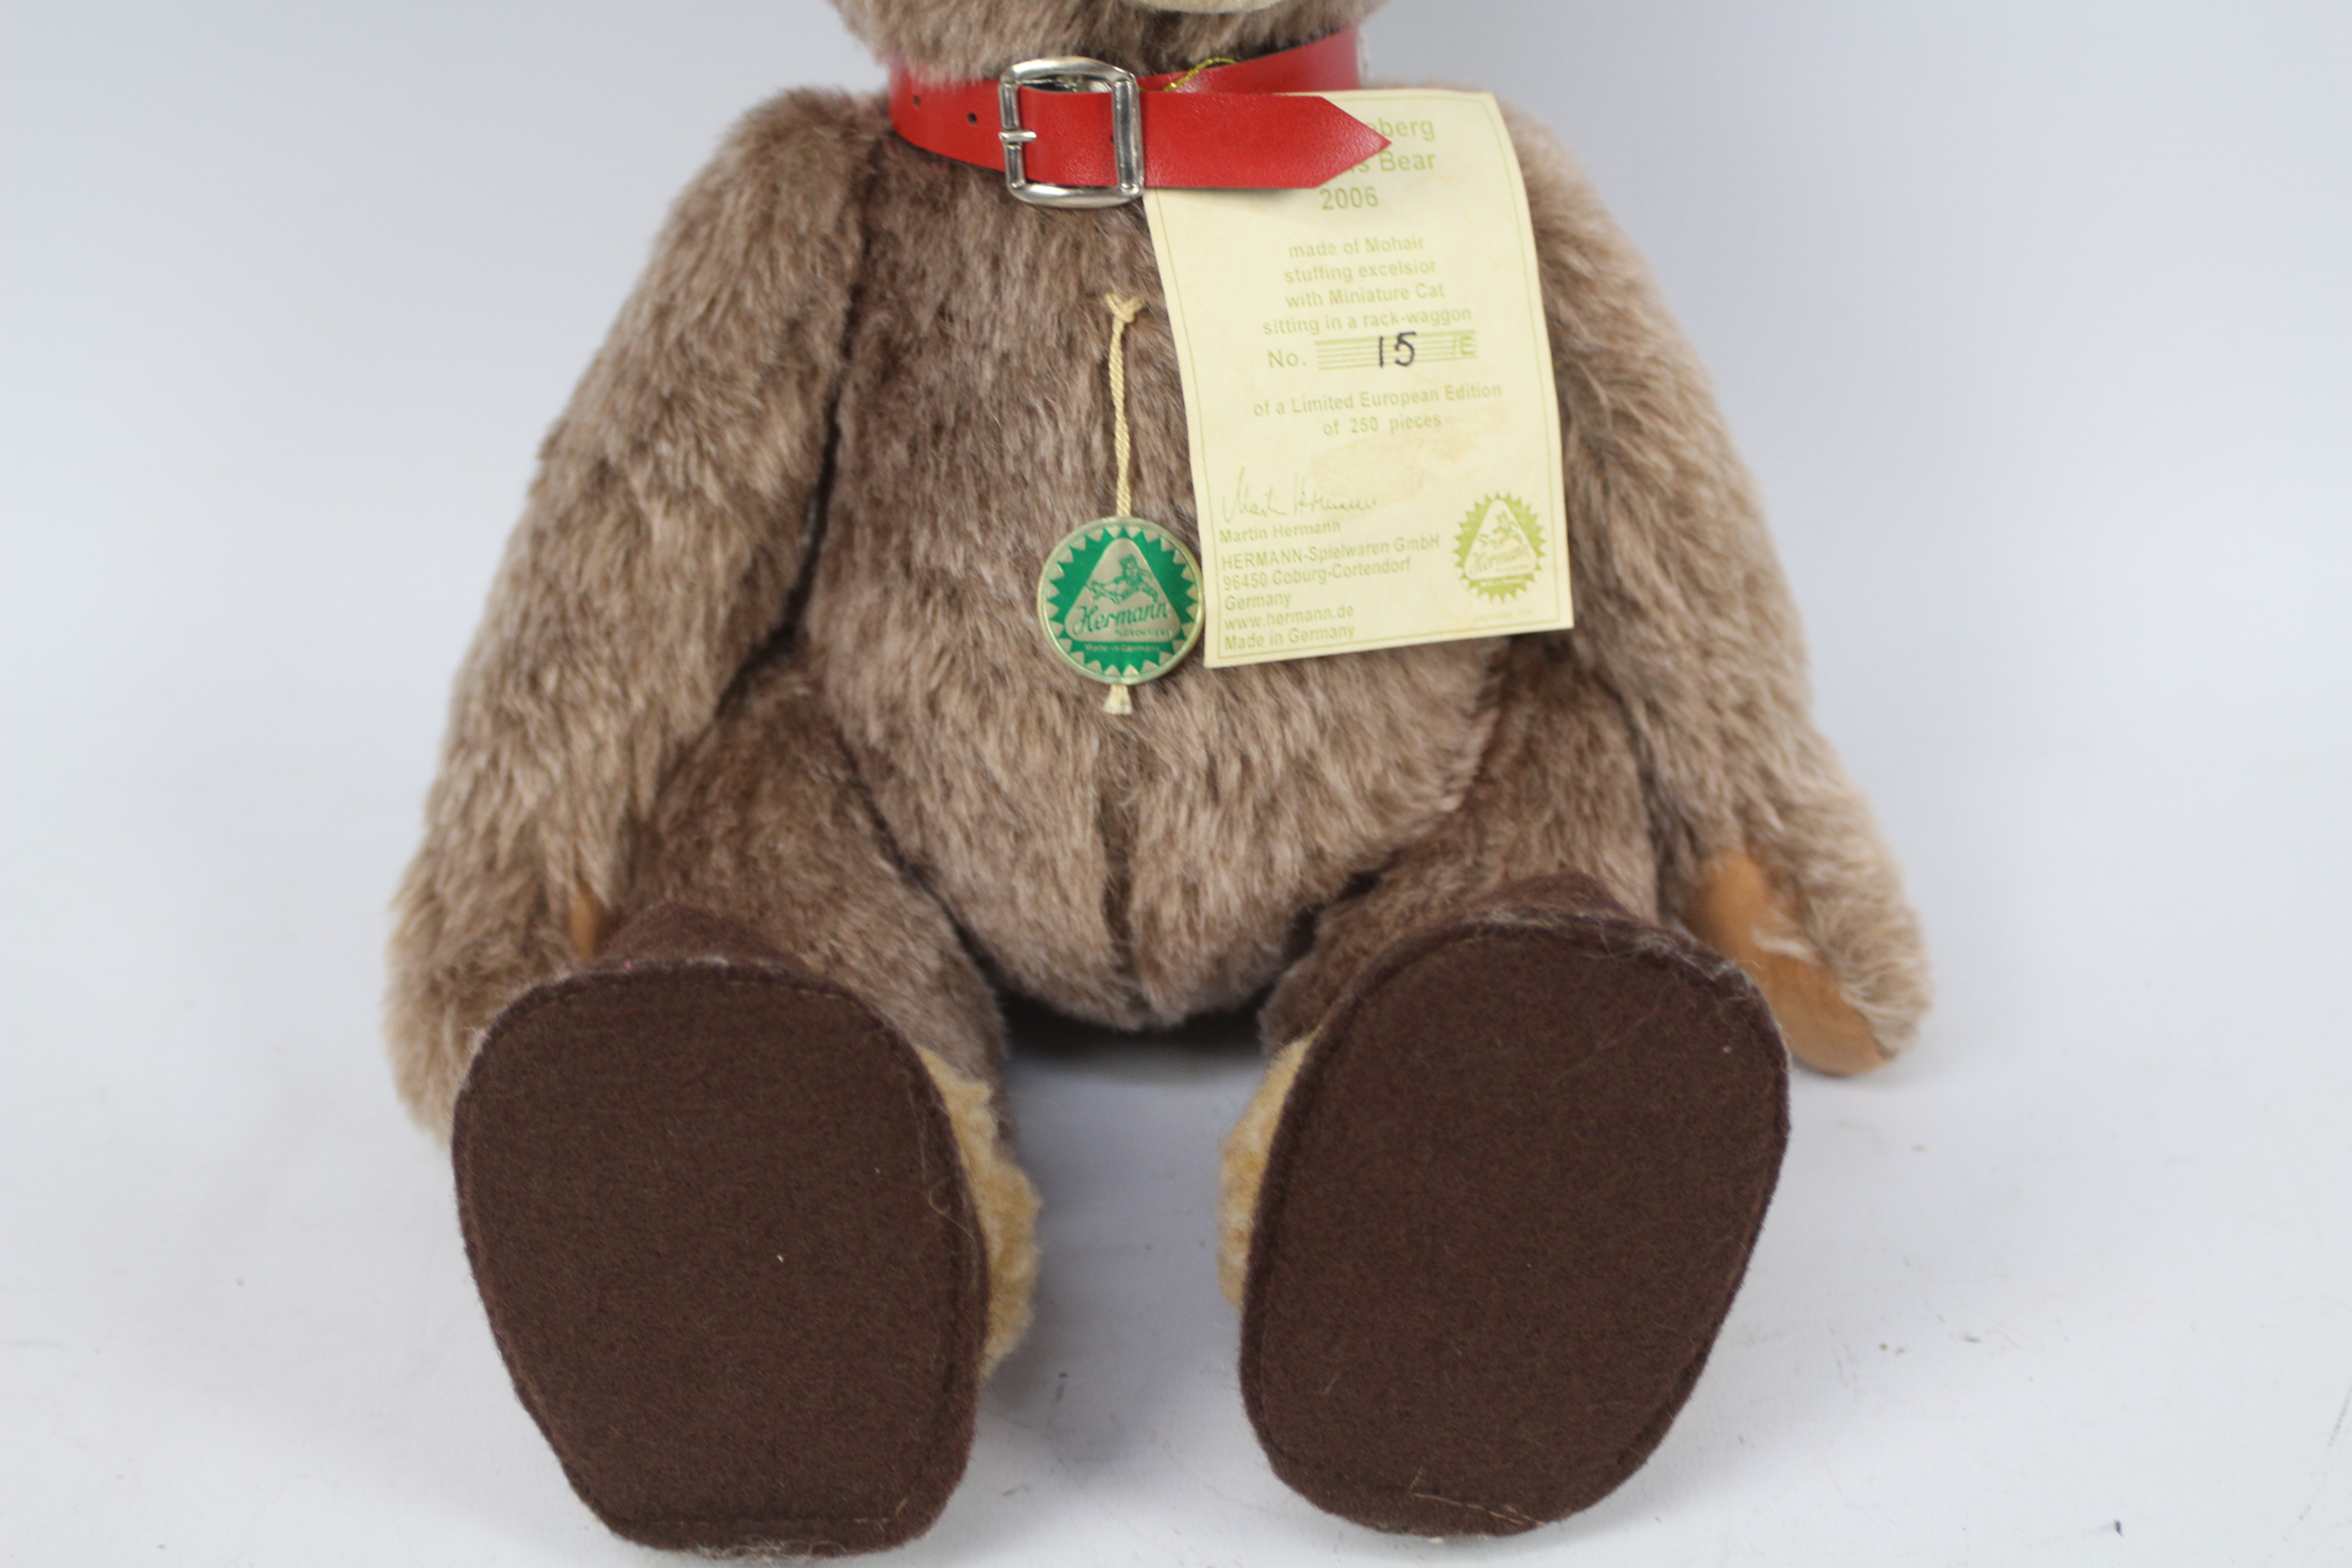 Hermann Bear - A Hermann made limited edition teddy bear 'Sonneberg Museums Bear 2006'. - Image 3 of 6